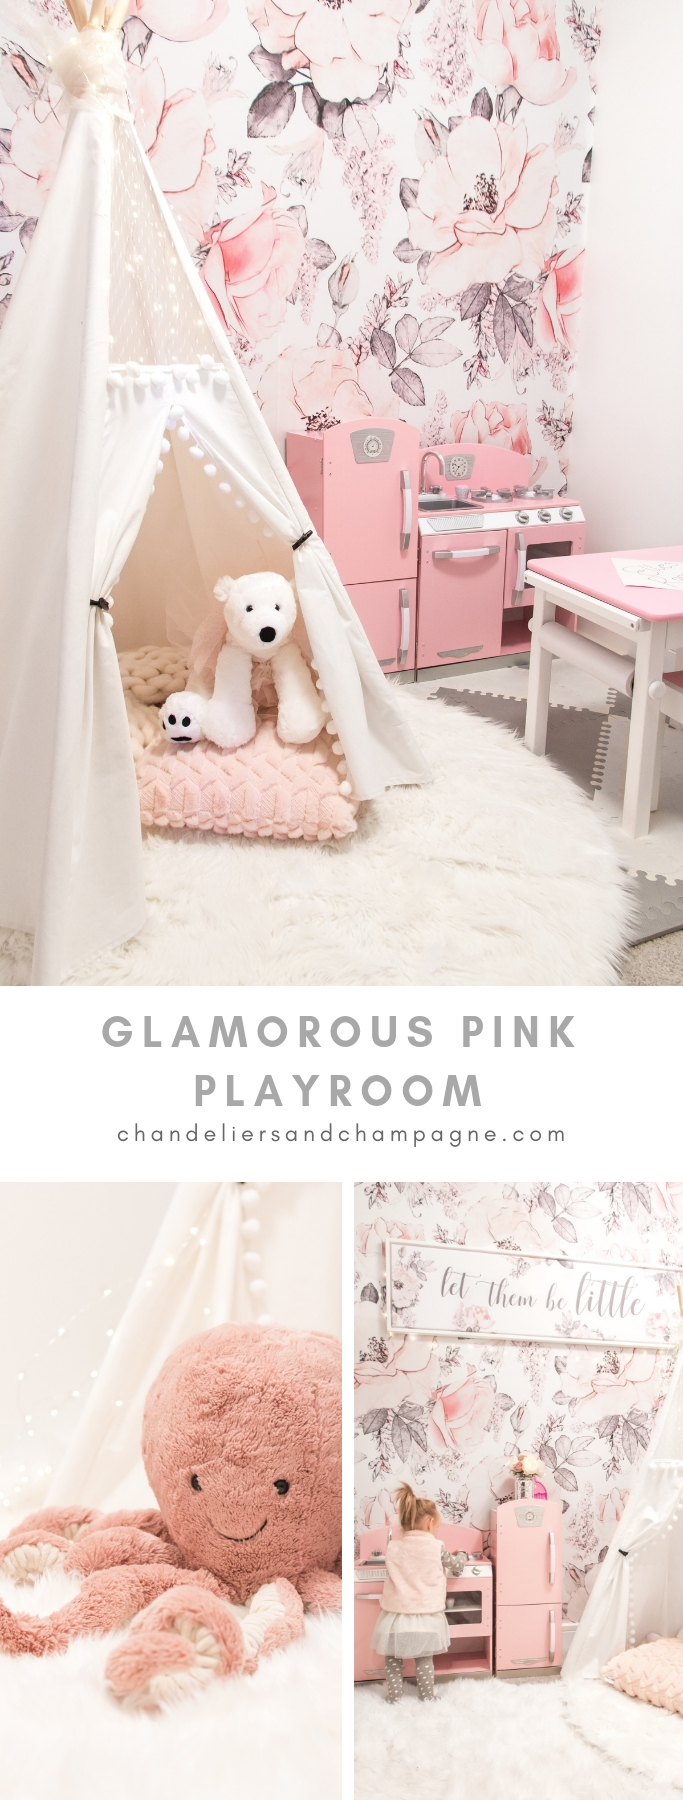 Glamorous pink playroom - Glamorous pink toy room - Glamorous pink nursery - Glamorous pink girls bedroom - Glamorous pink kids decor